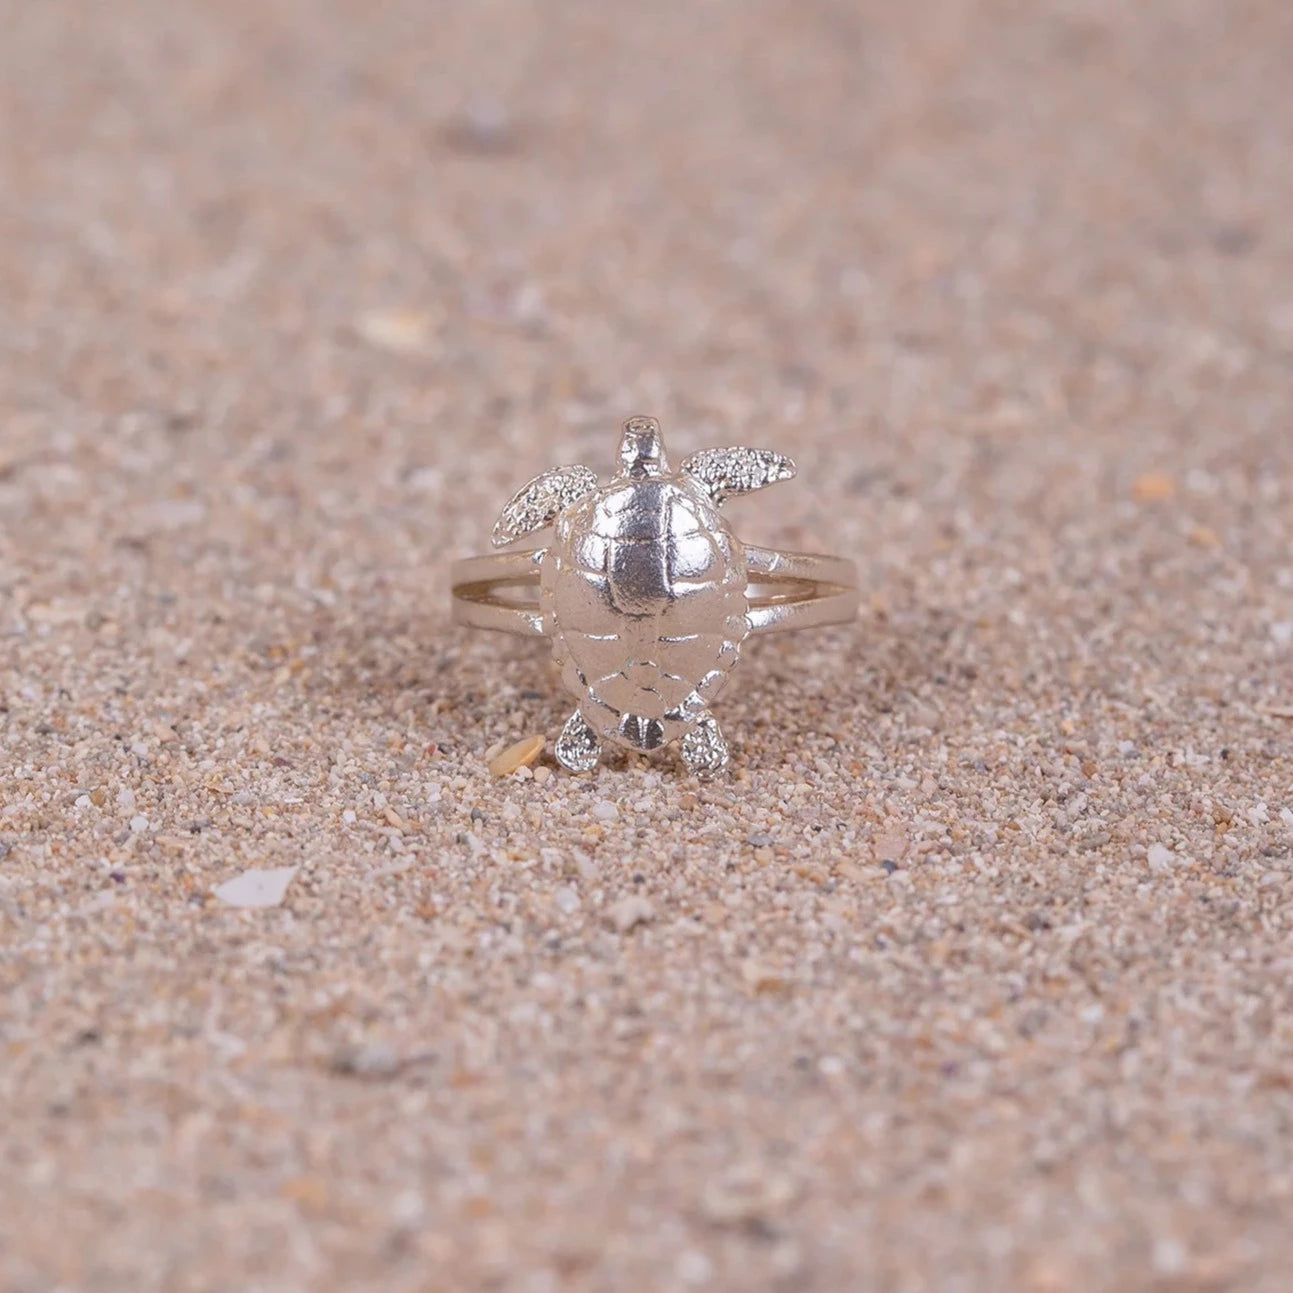 Anillo Cayume (Tortuga) de plata en macro sobre arena.